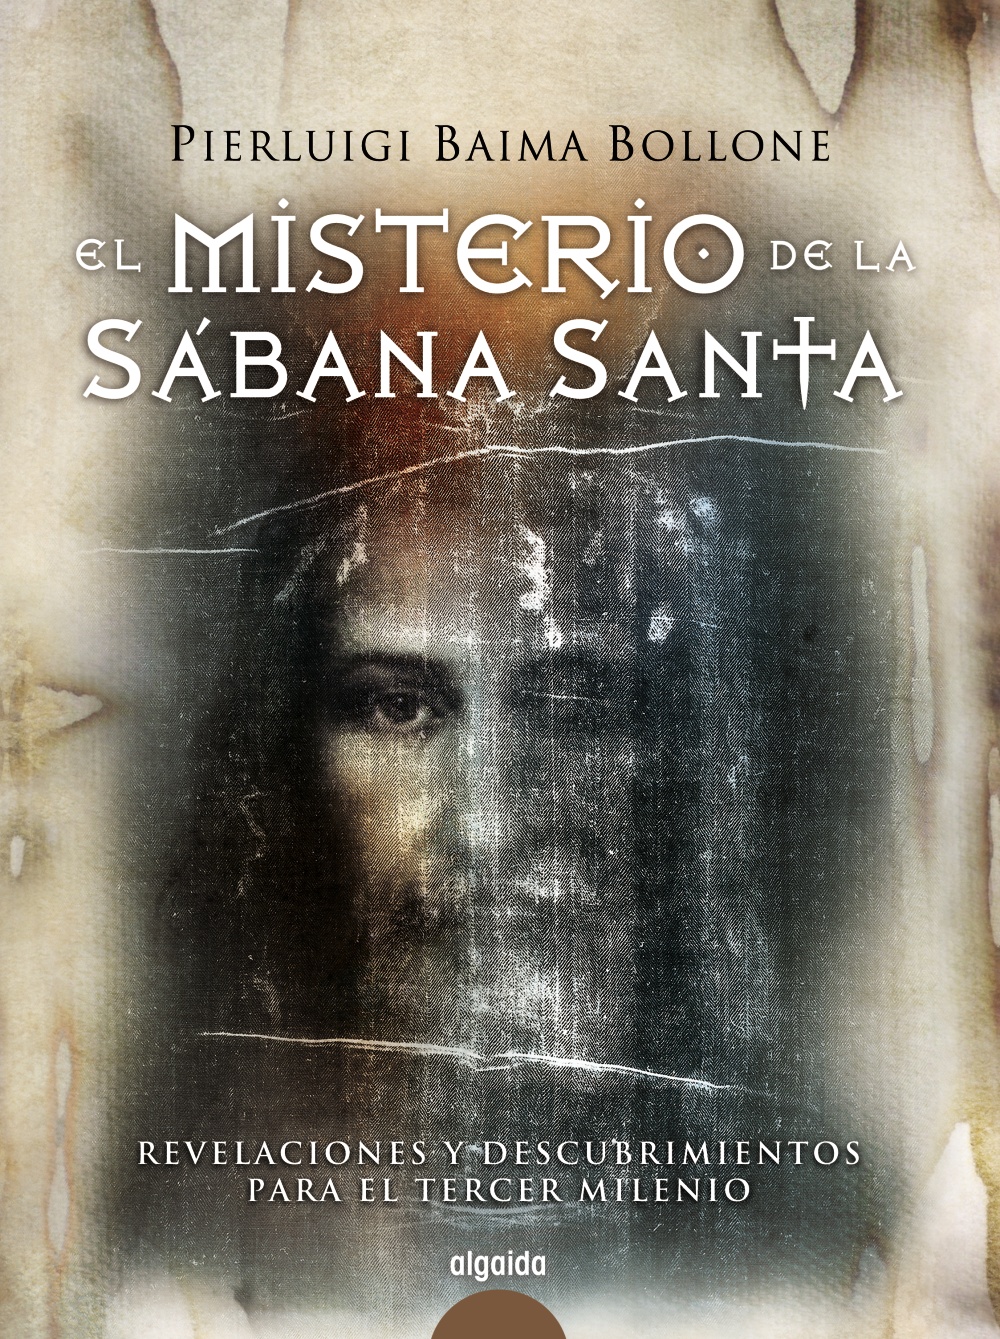 Audiolibro El Misterio de la Sábana Santa – Pierluigi Baima Bollone